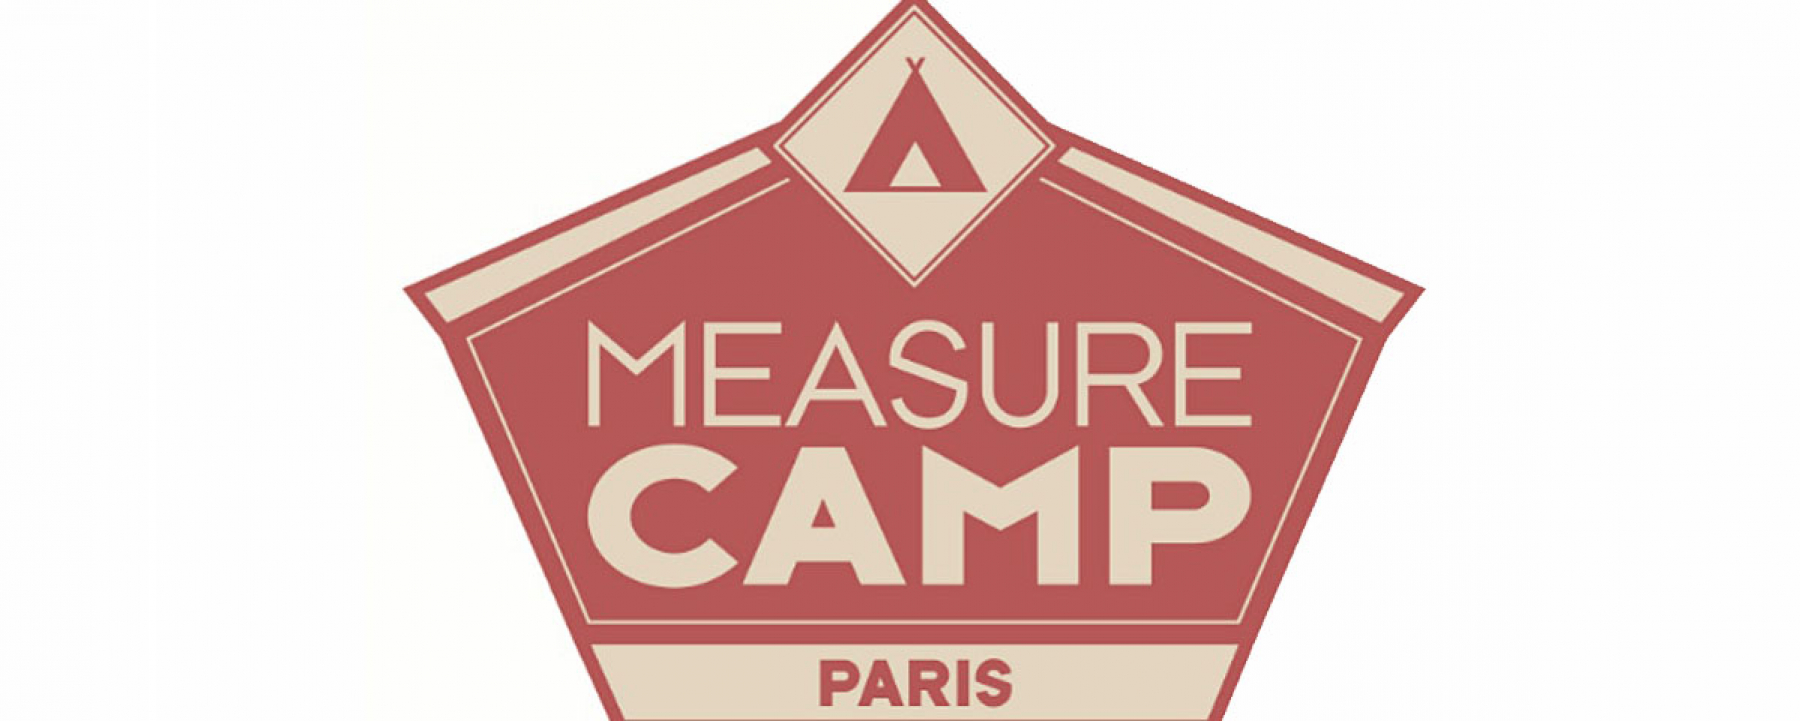 Événement Measure Camp Paris 7e édition, le 6 juin 2020, dans les locaux d'HETIC, organisé par l'AADF